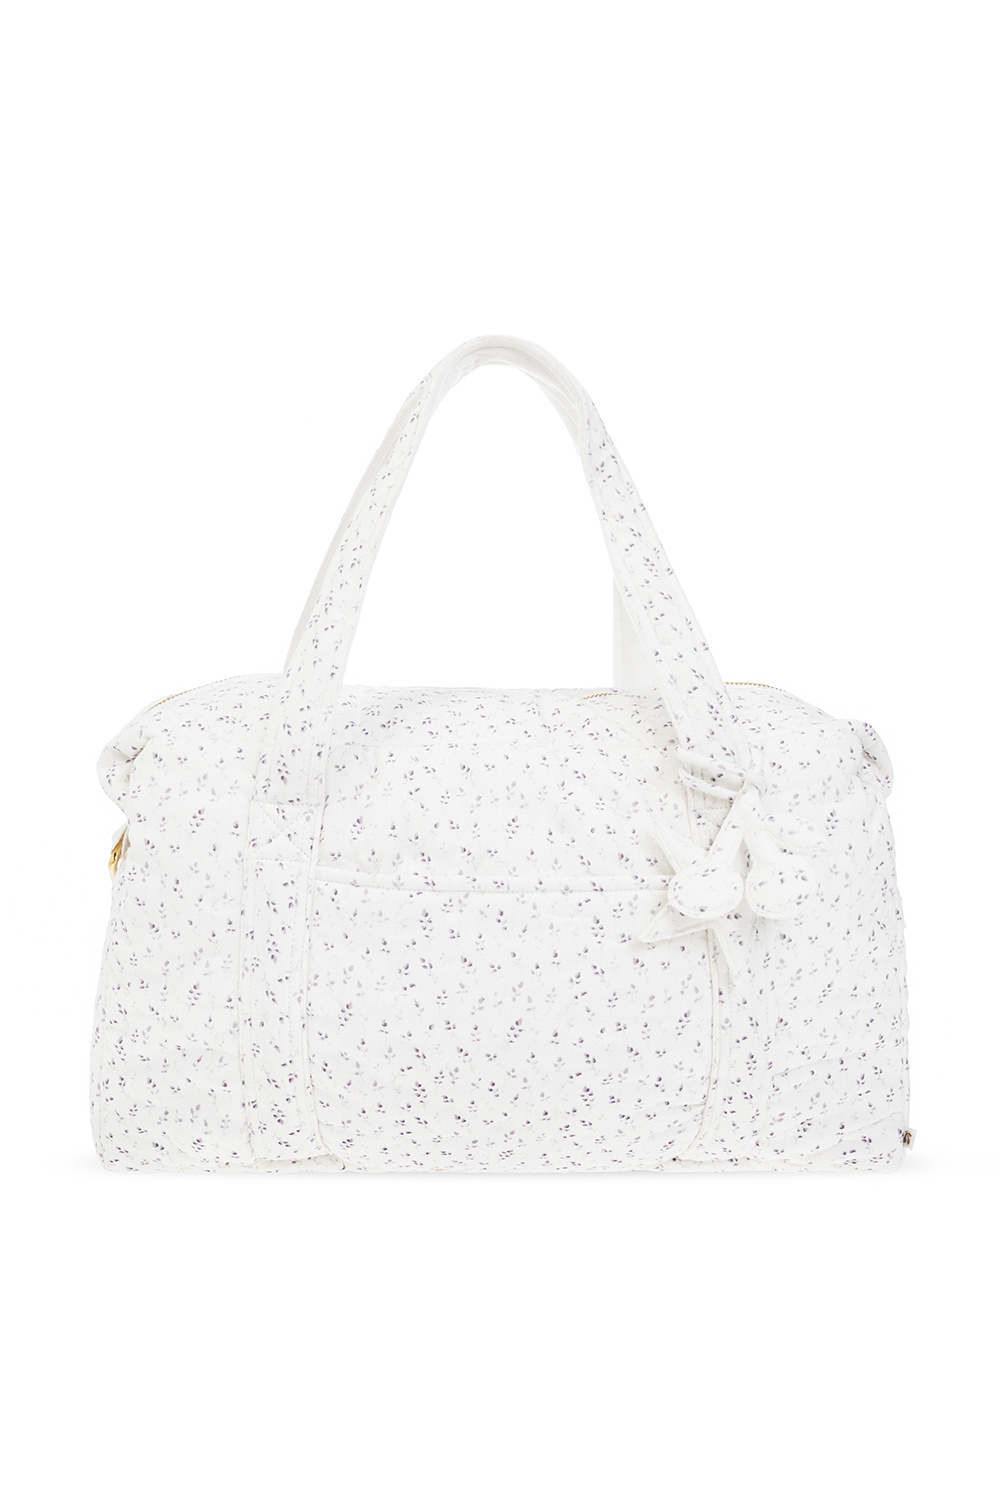 Bonpoint  Shoulder bag with floral motif